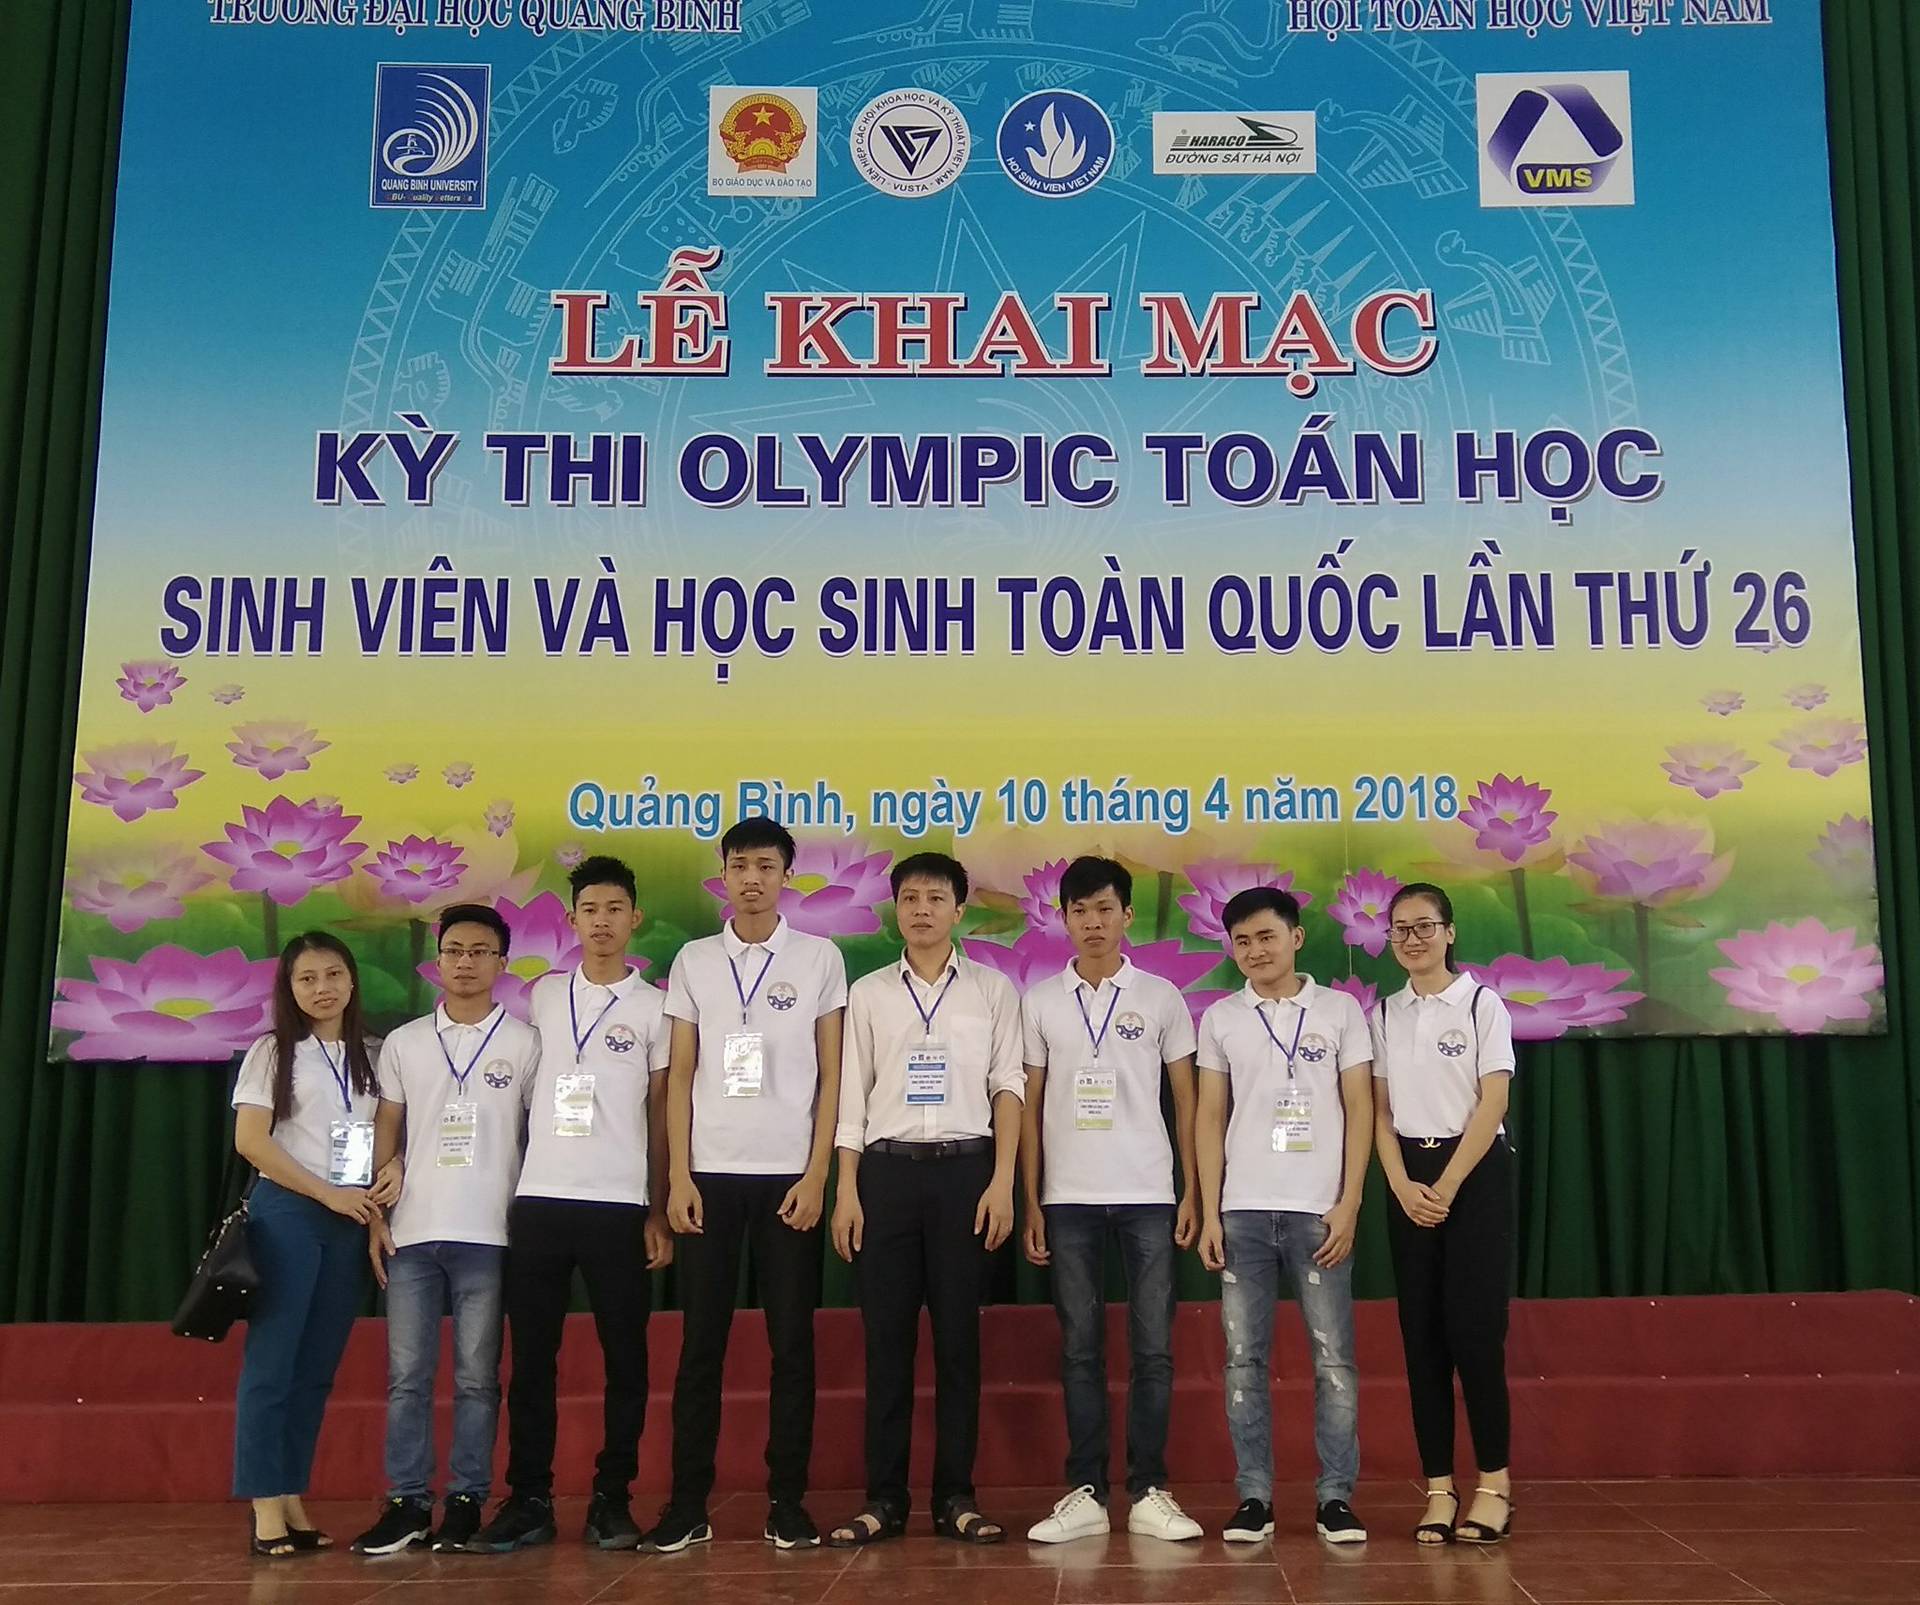 Trường ĐH Kỹ thuật công nghiệp (ĐH Thái Nguyên): Ngôi trường giàu truyền thống - Hình 6